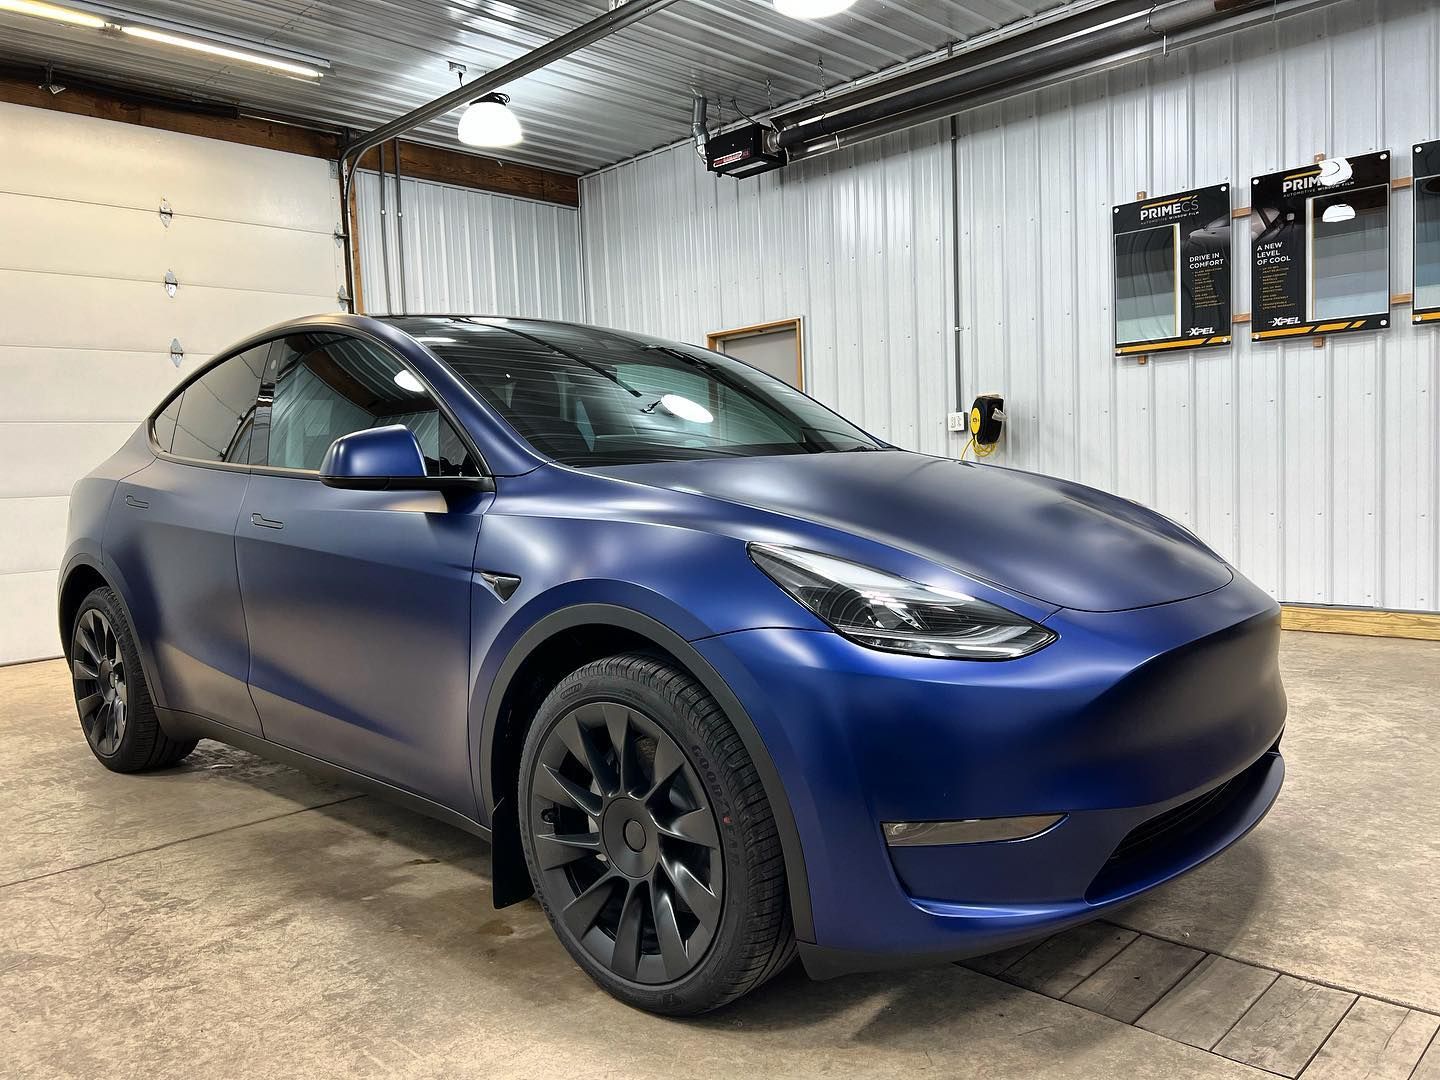 Blue Tesla car parked inside the shop